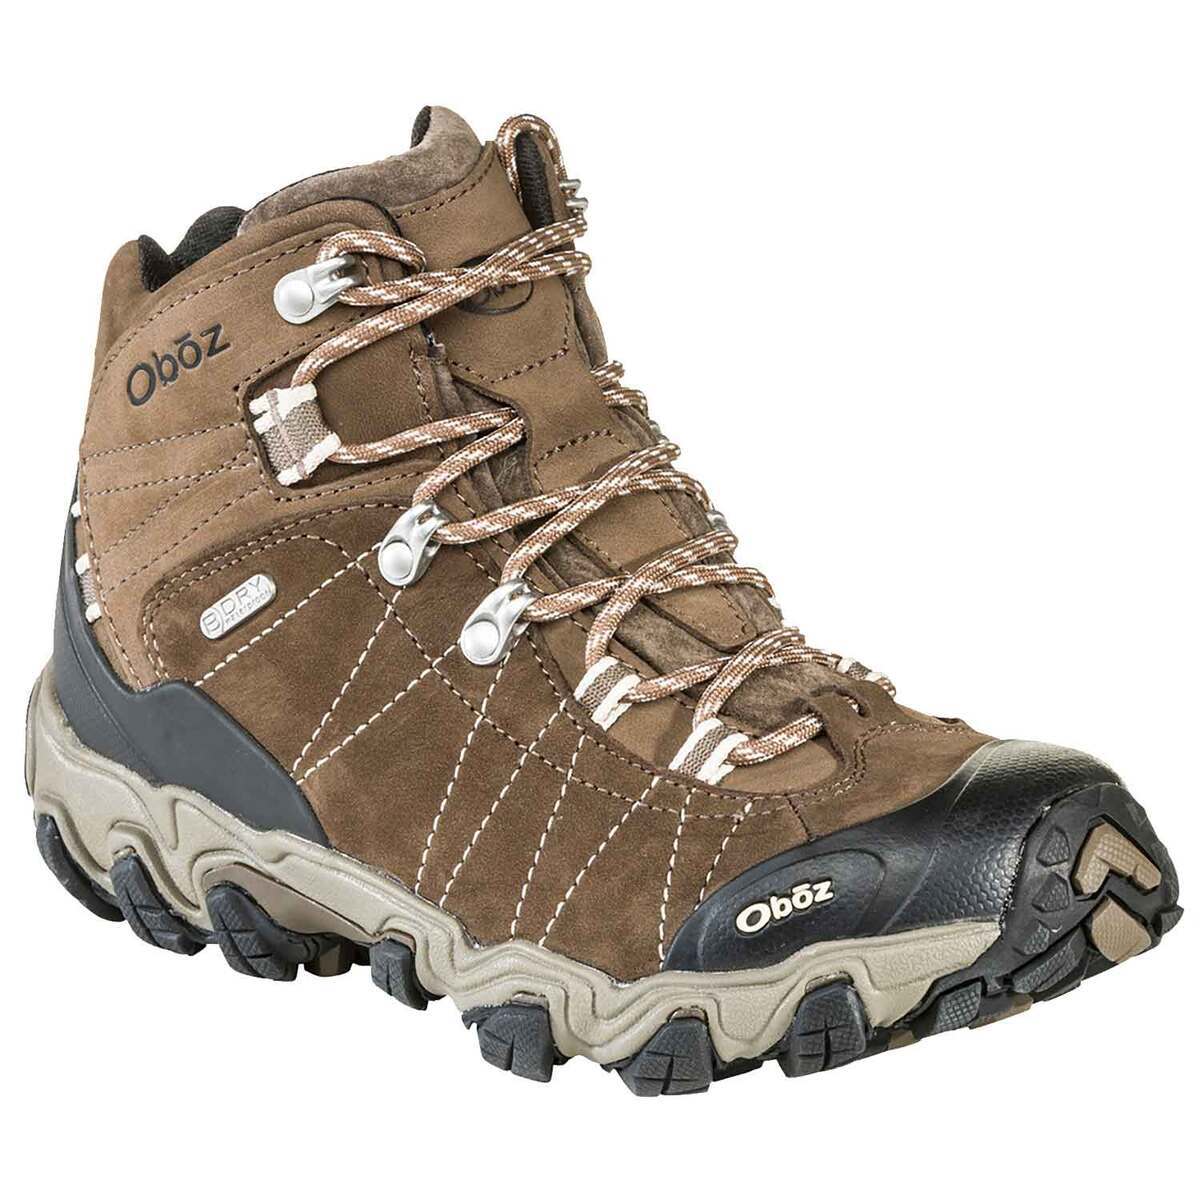 Oboz Women's Bridger Waterproof Mid Hiking Boots - Walnut - Size 8.5 D -  Walnut 8.5